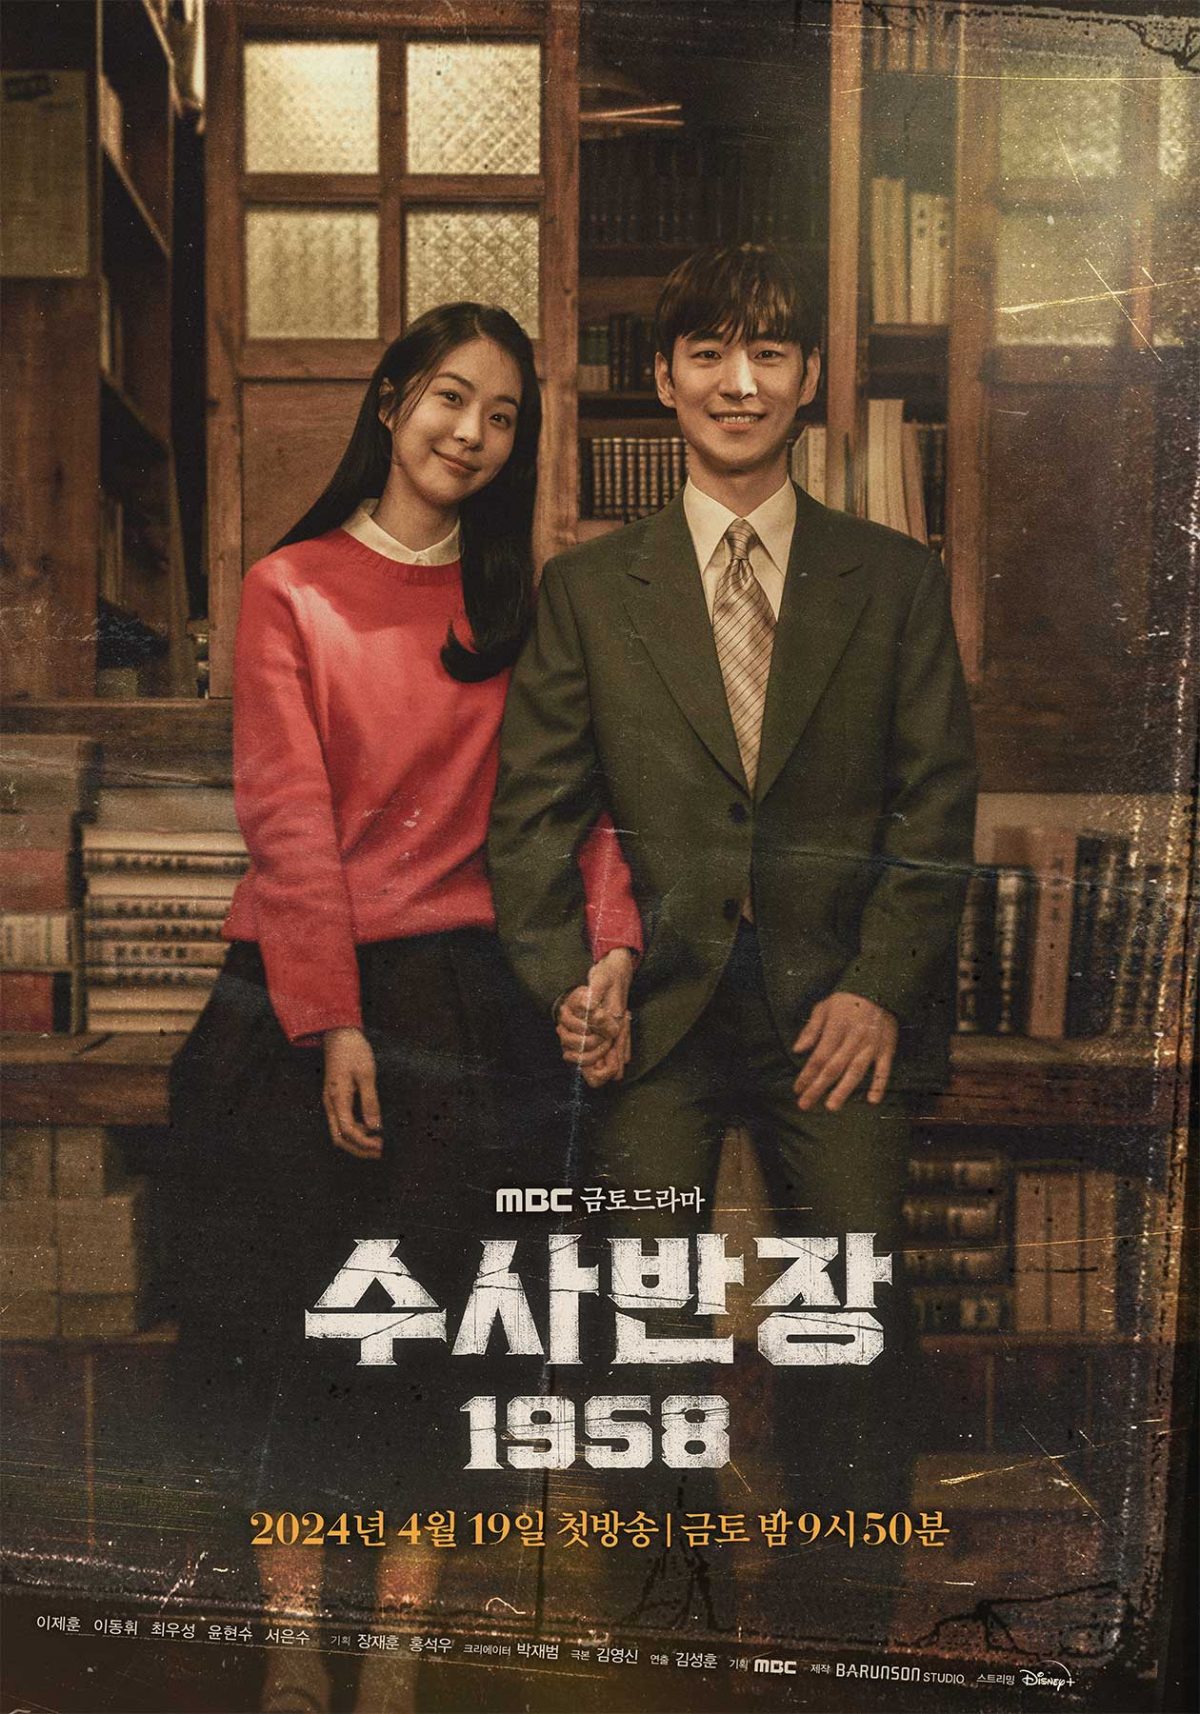 Ли Джэ Хун и Со Ын Су - влюбленная пара на новом постере дорамы "Старший инспектор 1958"